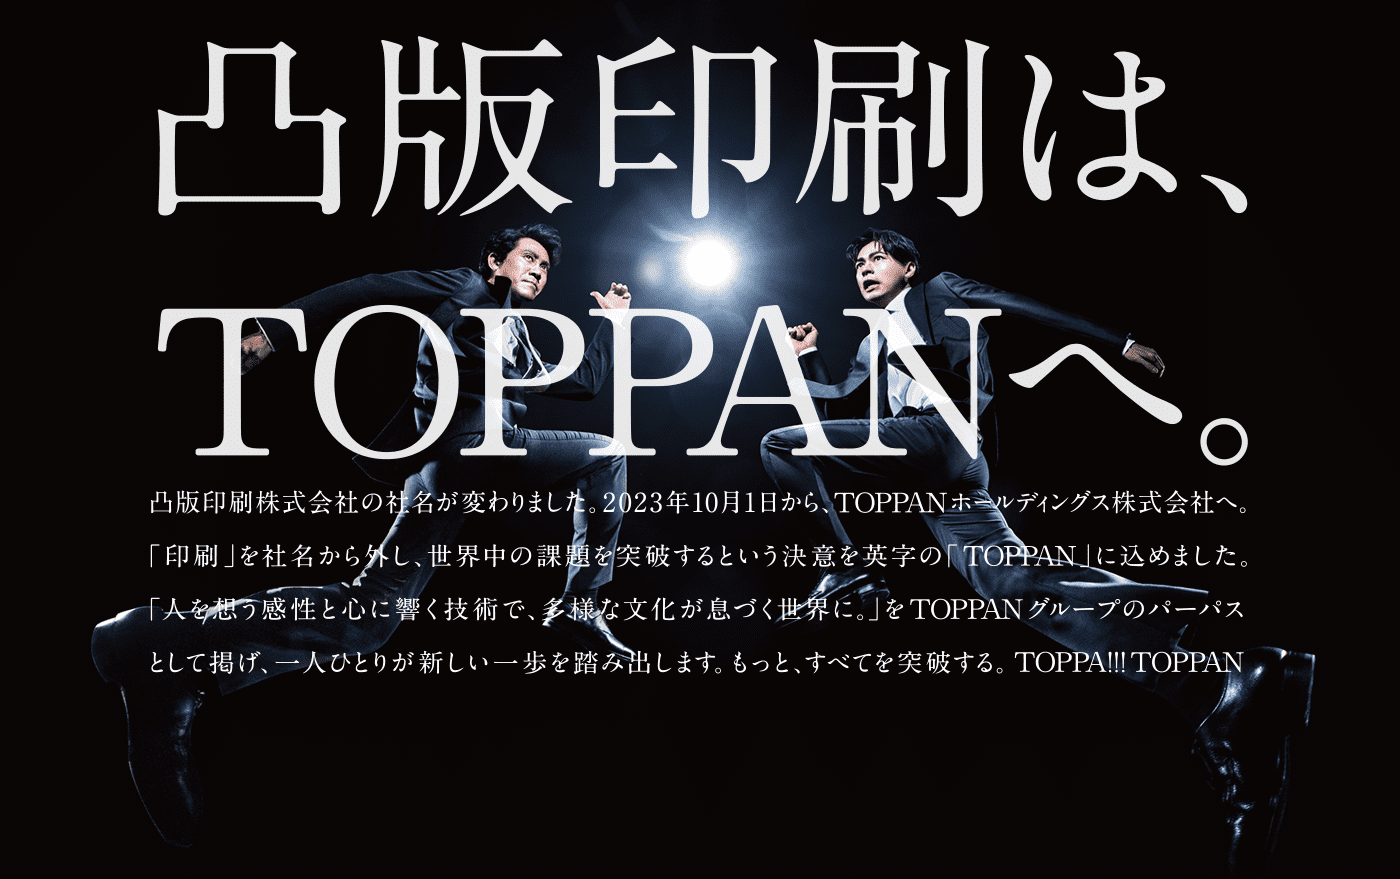 凸版印刷はTOPPANへ。凸版印刷株式会社の社名が変わりました。2023年10月1日から、TOPPANホールディングス株式会社へ。「印刷」を社名から外し、世界中の課題を突破するという決意を英字の「TOPPAN」に込めました。「人を想う感性と心に響く技術で、多様な文化が息づく世界に。」をTOPPANグループのパーパスとして掲げ、一人ひとりが新しい一歩を踏み出します。もっと全てを突破する。TOPPA!!TOPPAN